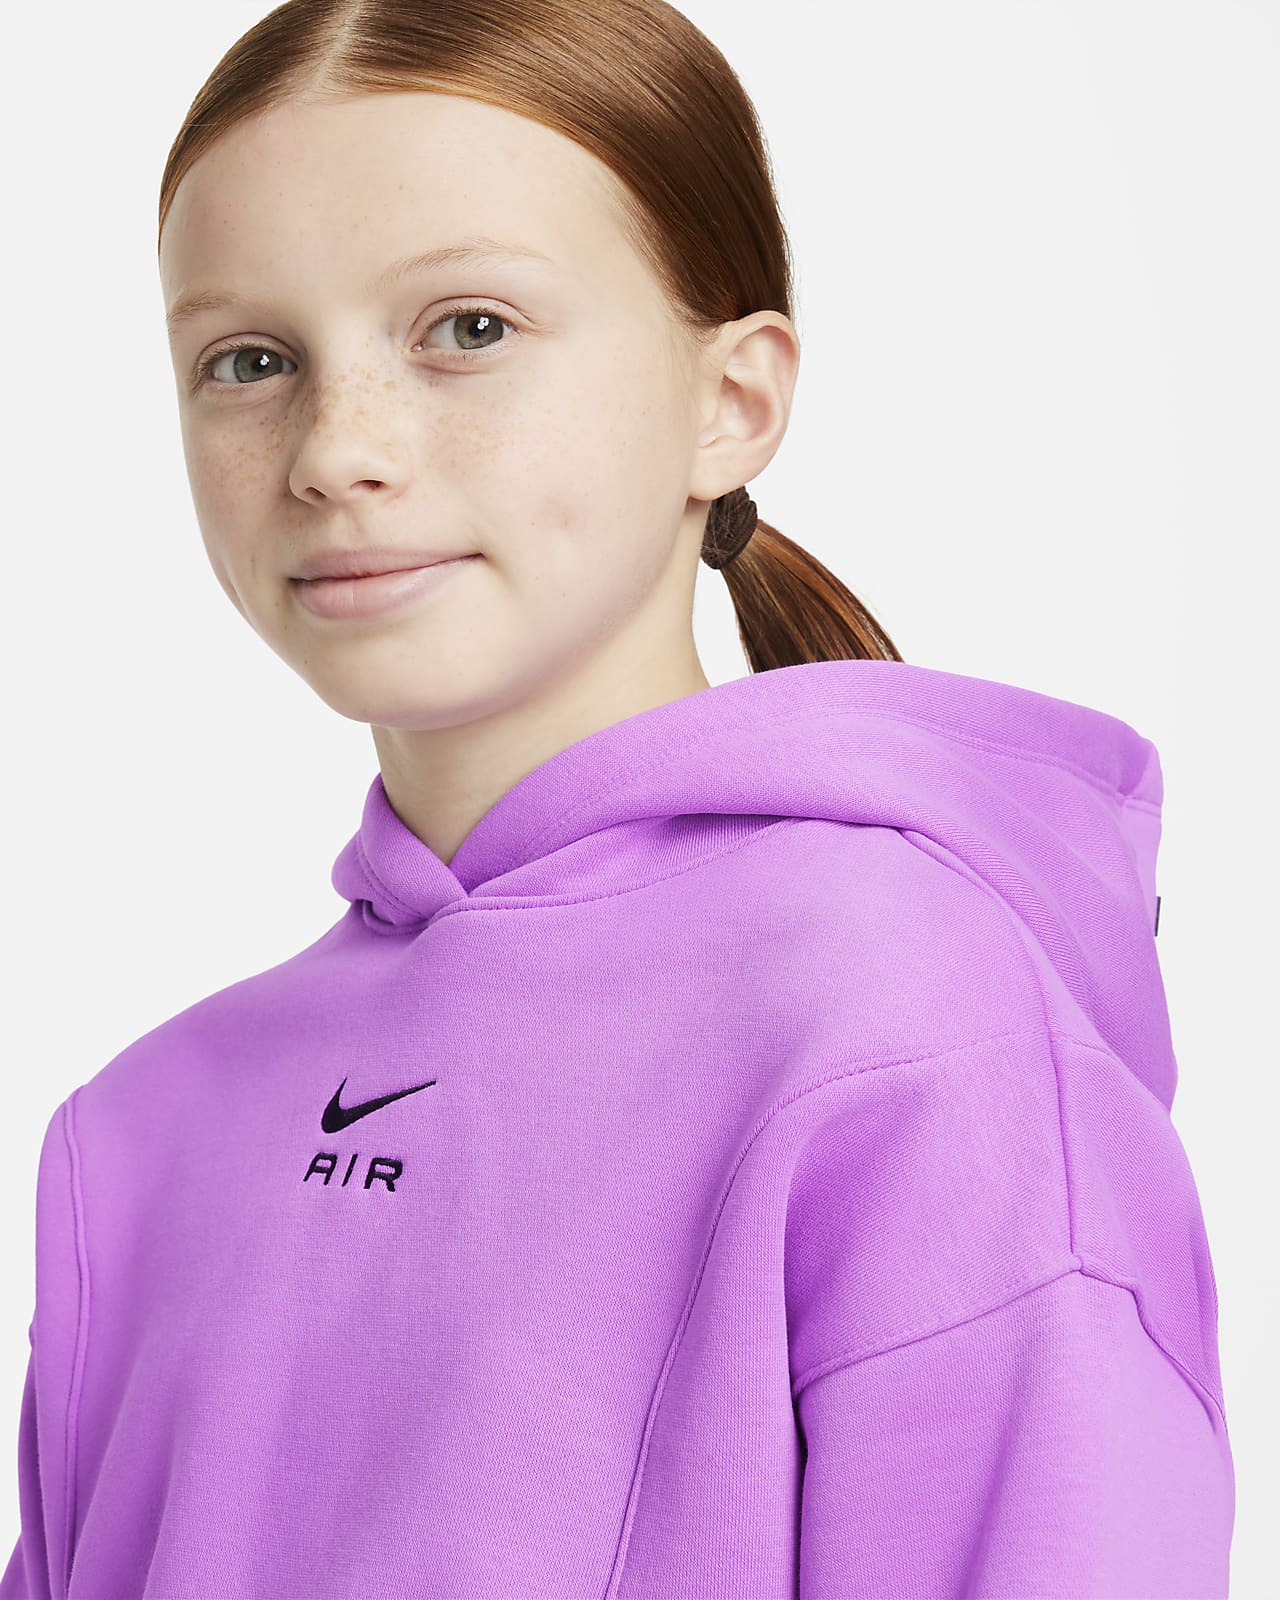 Grand roman Springplank Nike Air Korte hoodie van sweatstof voor meisjes. Nike NL